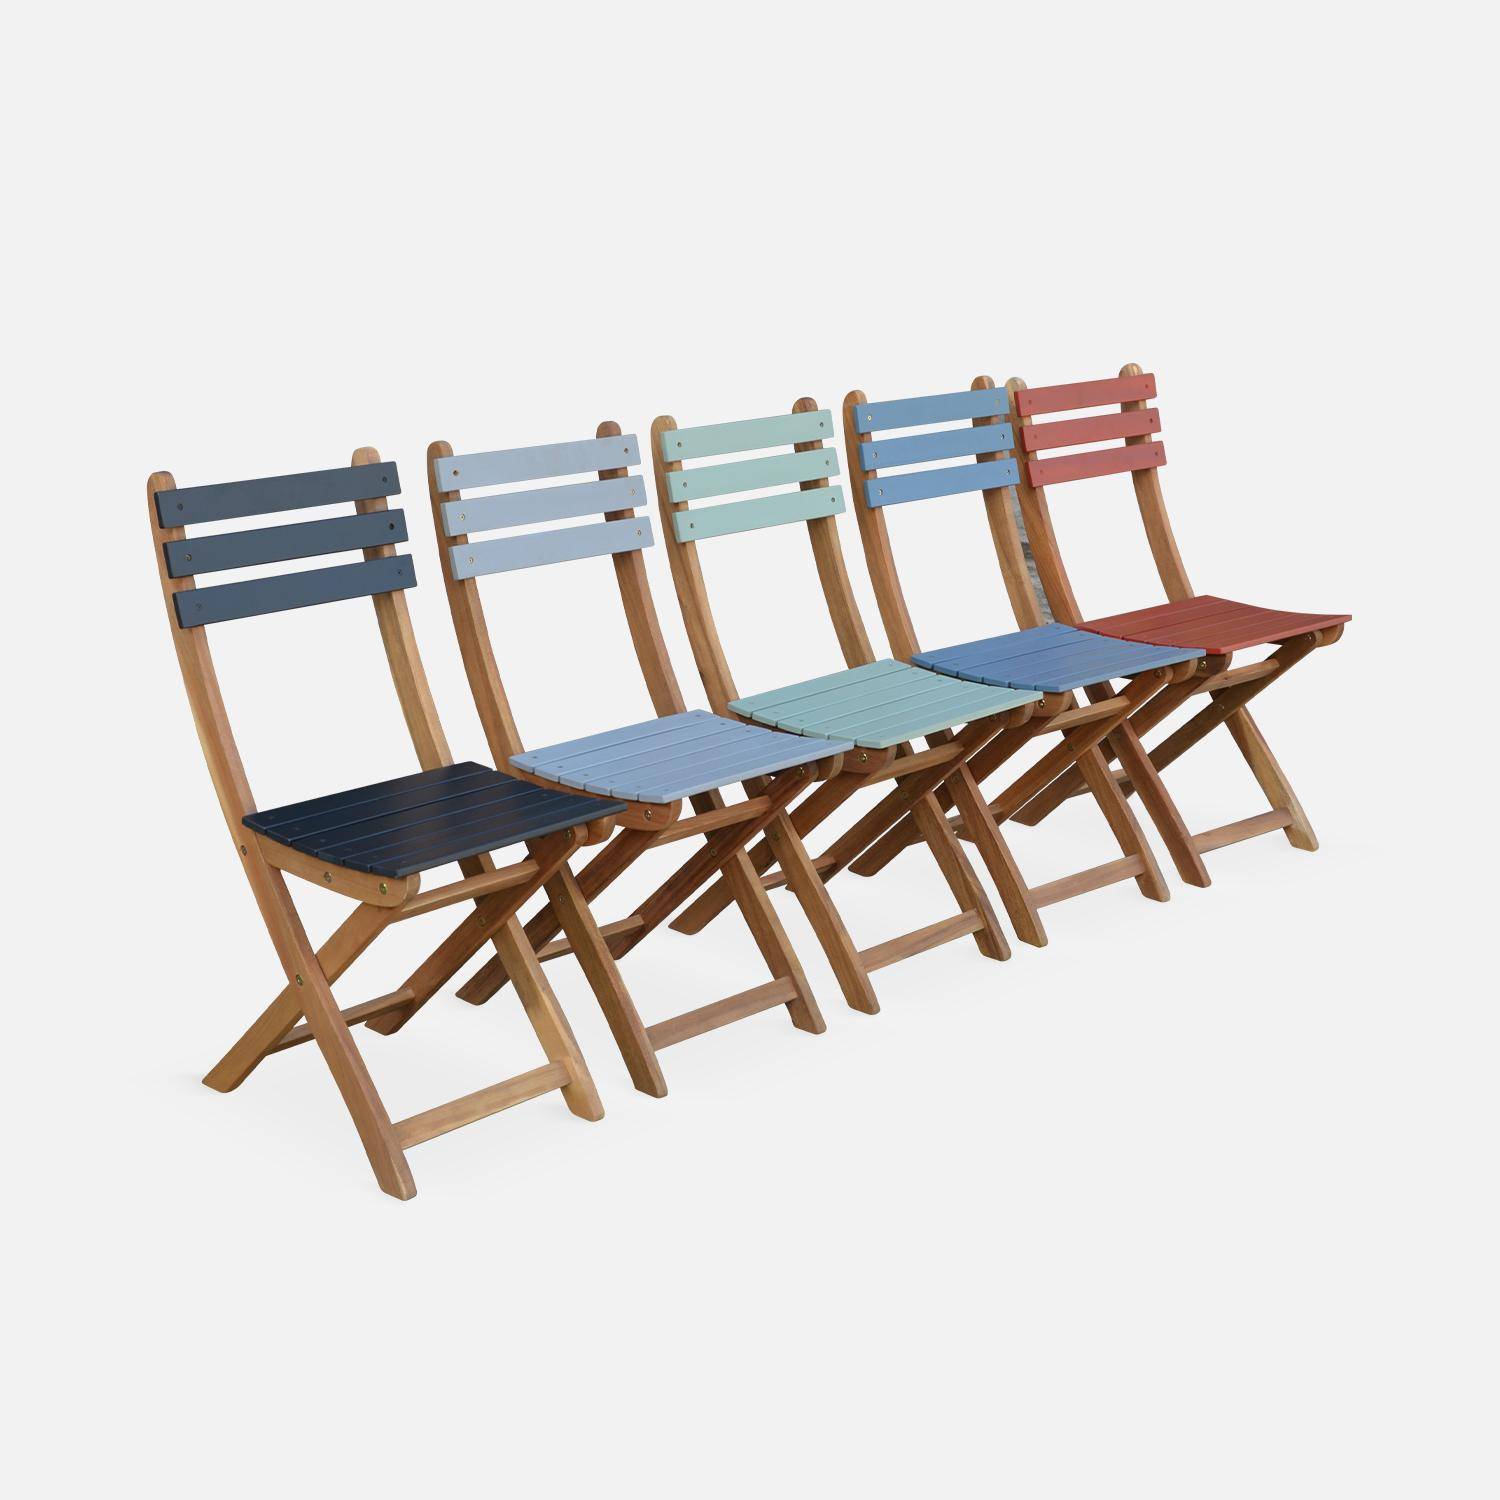 Mesa de jardim bistrô de madeira 60x60cm - Barcelona Bois / Terracotta - mesa dobrável quadrada bicolor em madeira de acácia com 2 cadeiras dobráveis Photo5